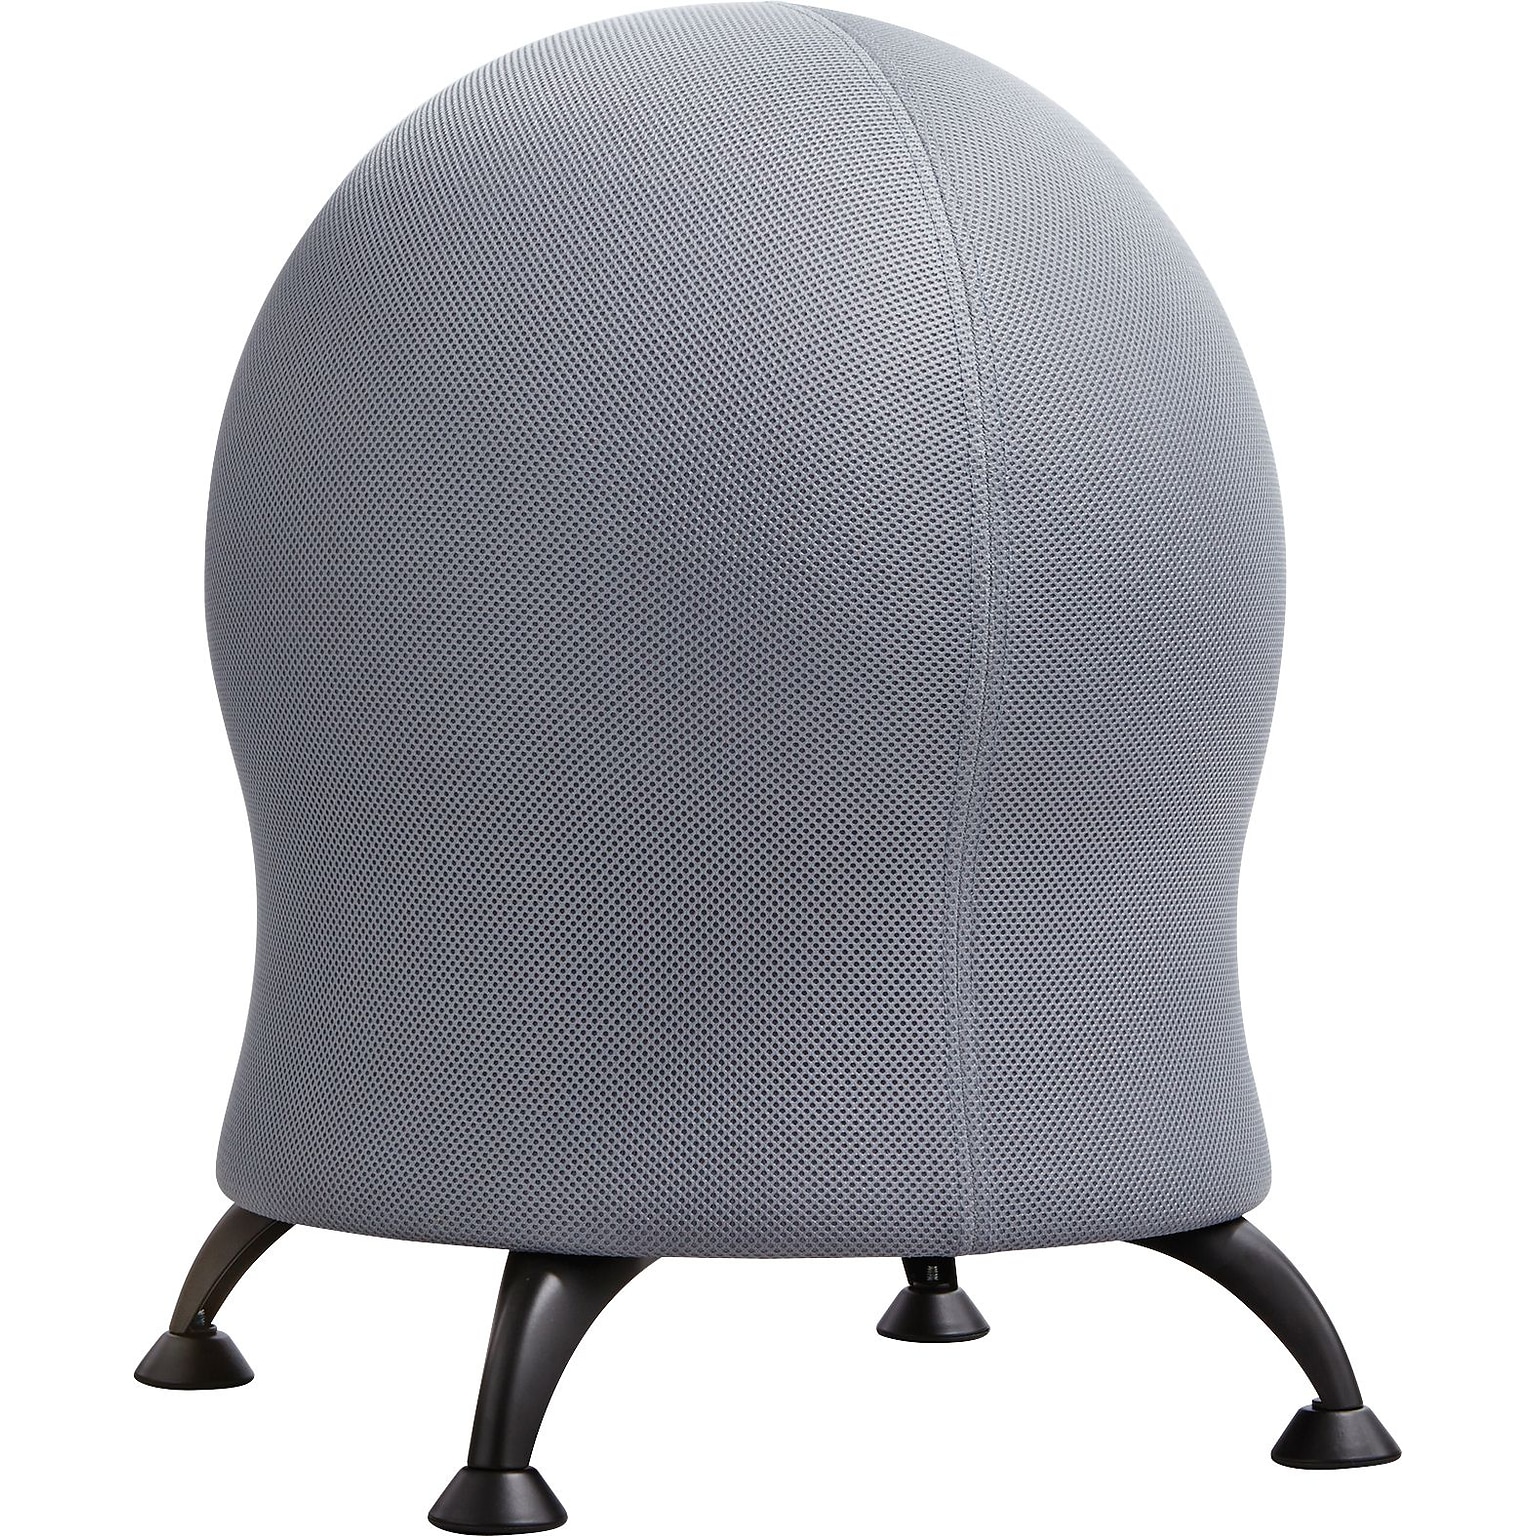 Safco Zenergy Plastic Ball Chair, Gray (4750GR)